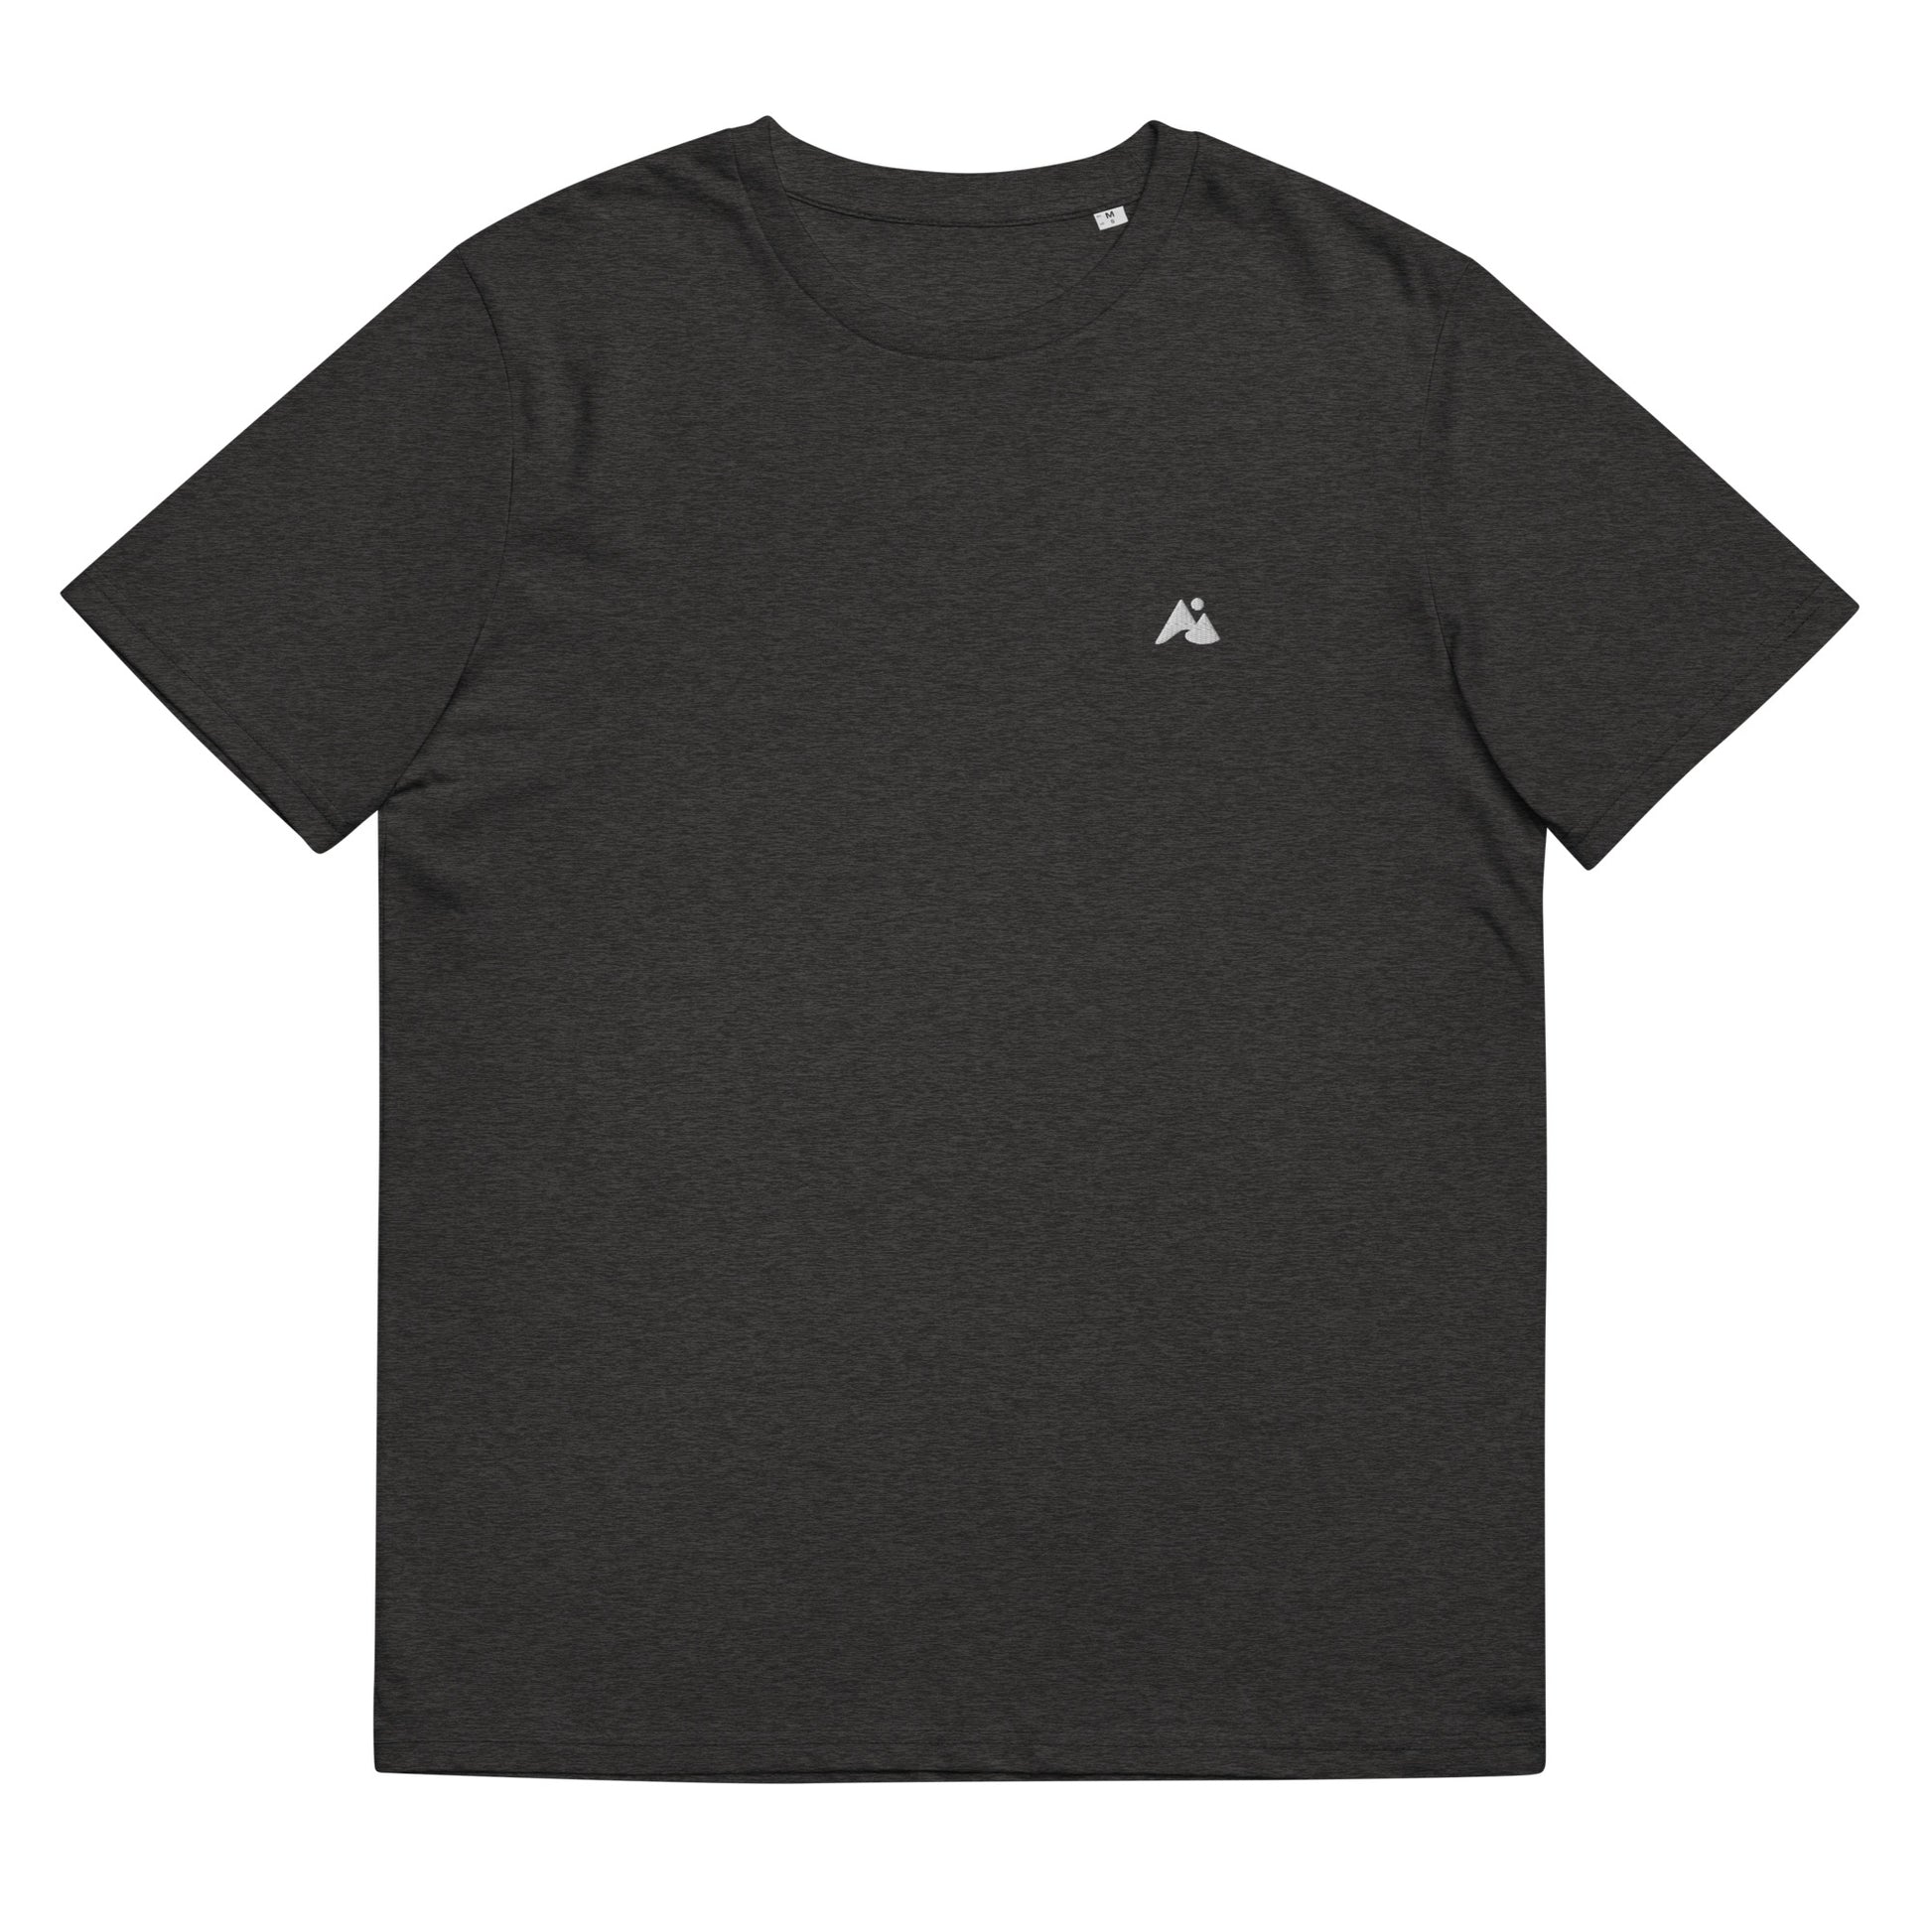 Il s'agit d'une image d'un t-shirt unisexe de couleur gris chiné. Le t-shirt est présenté sur un fond blanc. Il y a un petit logo montagne et vague blanc sur la poitrine côté cœur.